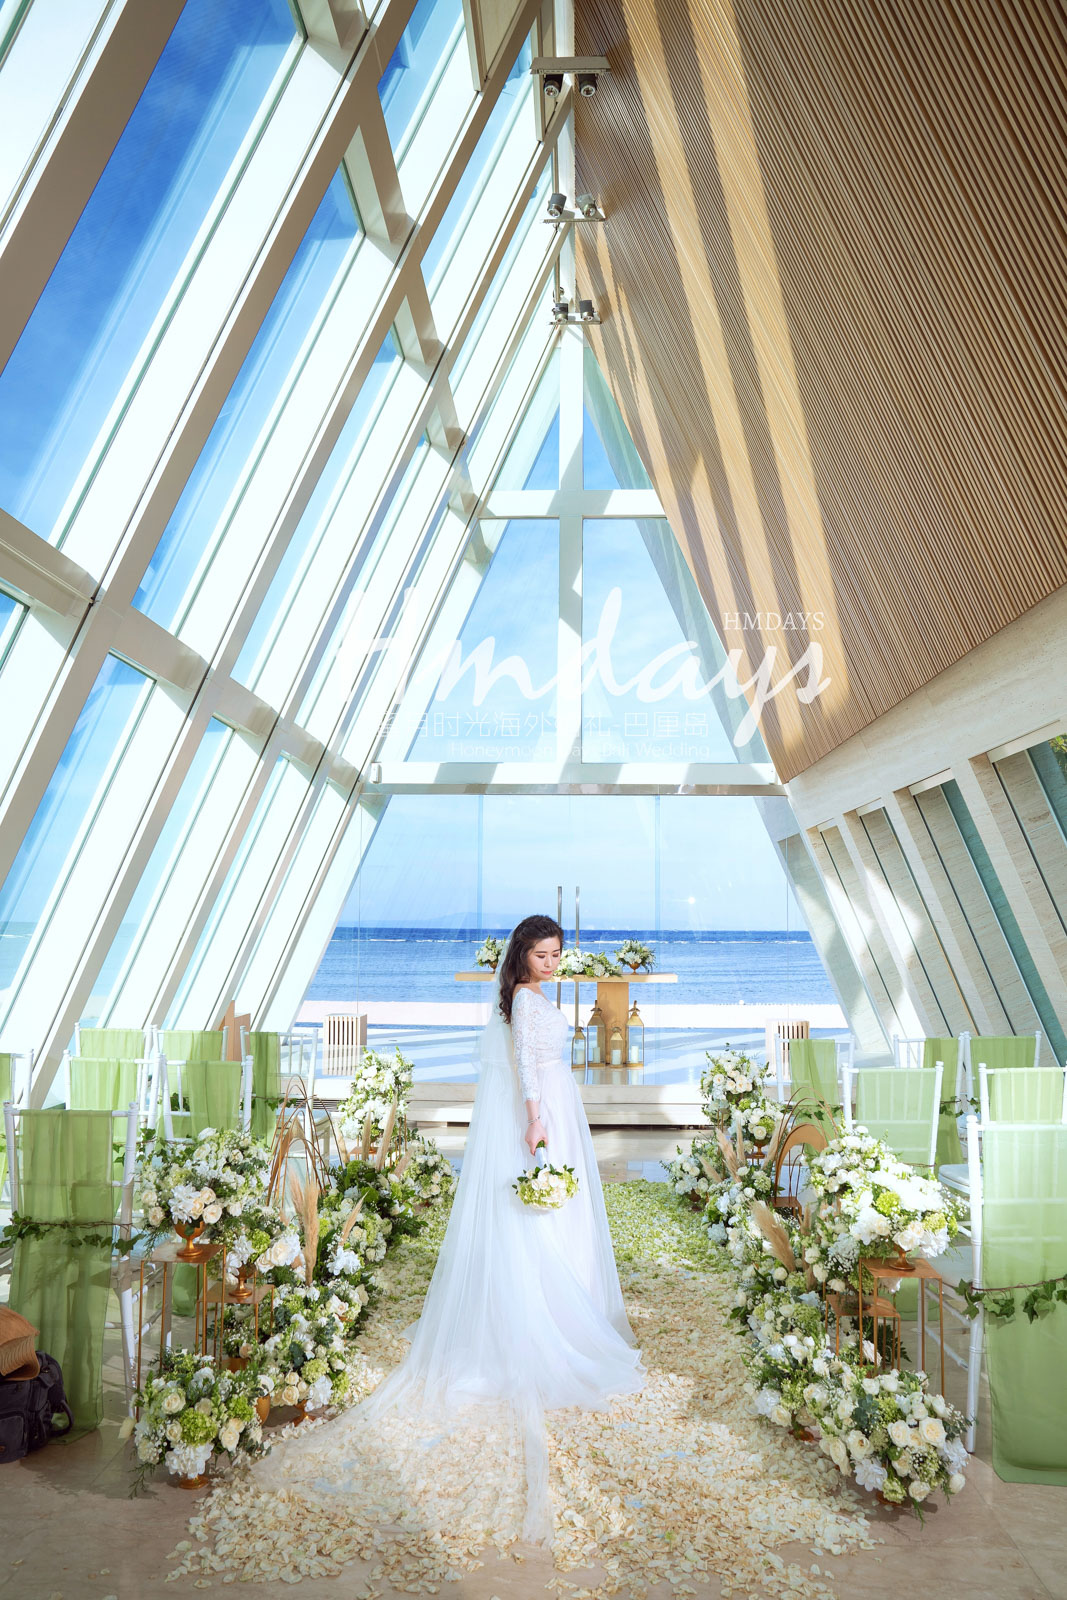 海外婚礼布置|巴厘岛婚礼定制布置